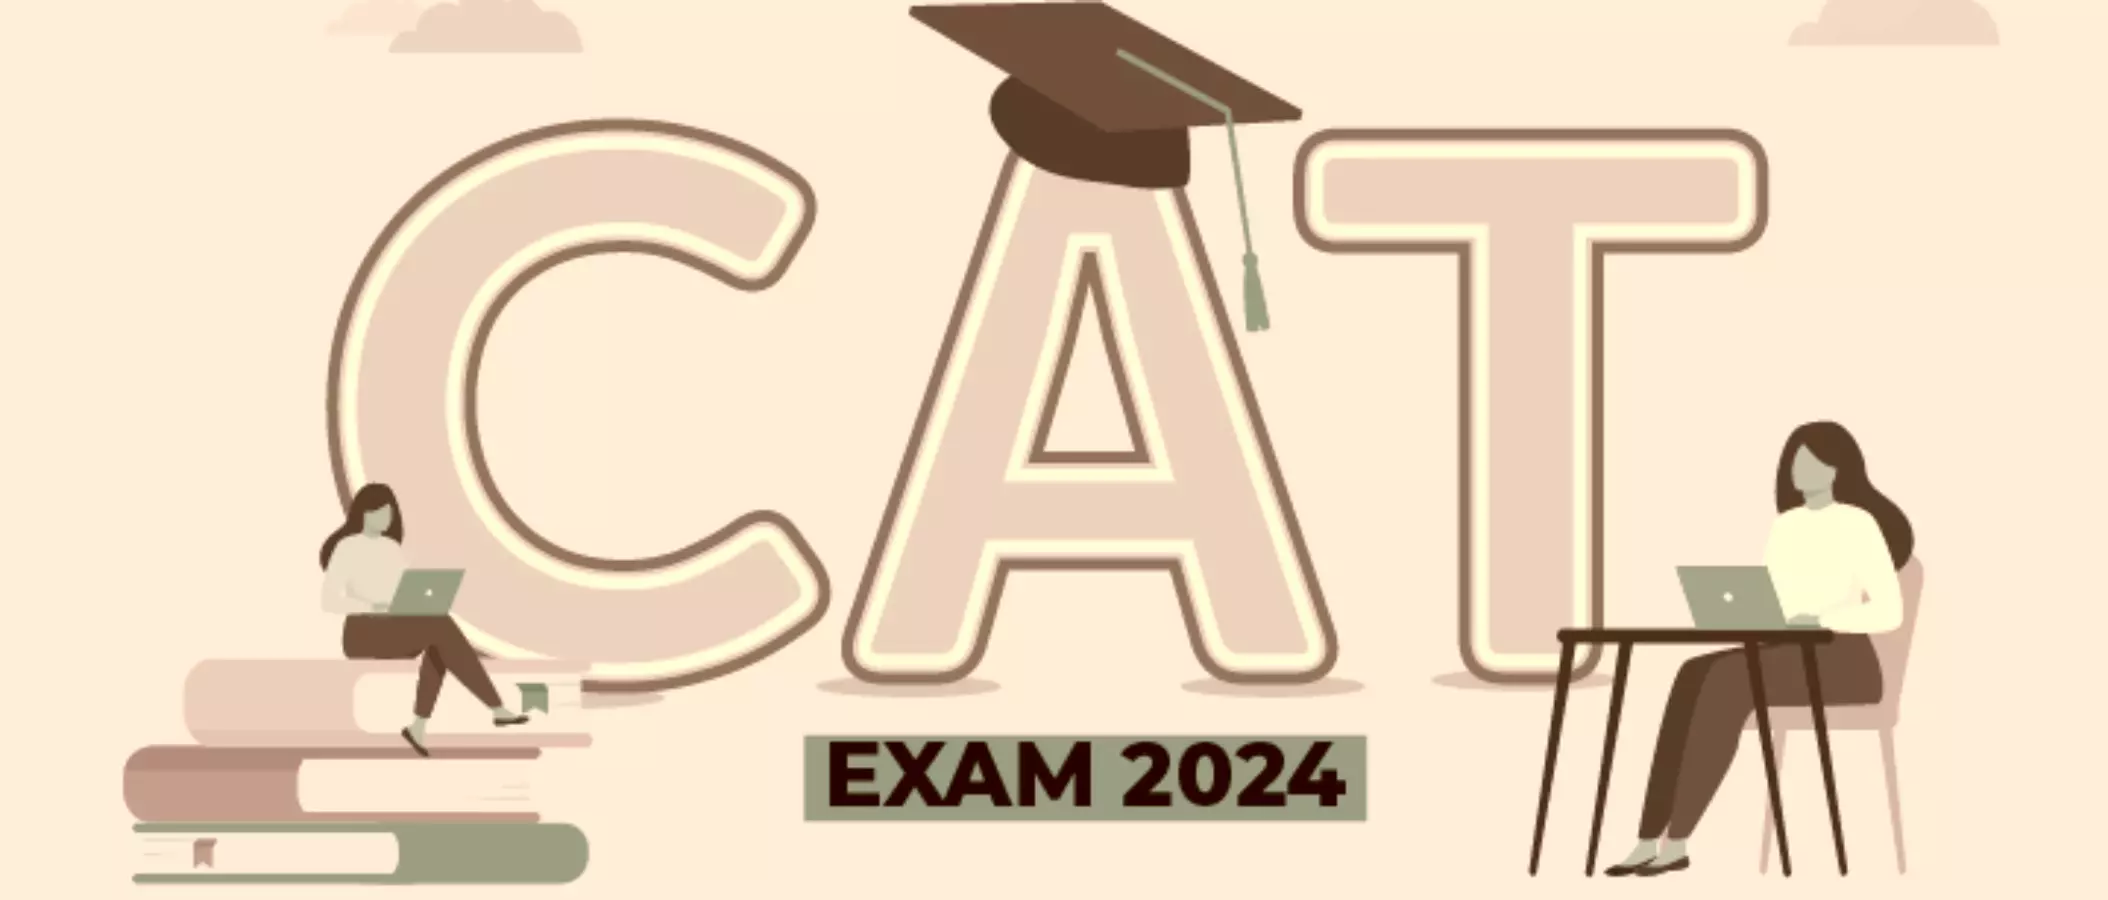 CAT 2024: कैट 2024 परीक्षा कार्यक्रम की हुई घोषणा, 1 अगस्त से शुरू होंगे पंजीकरण